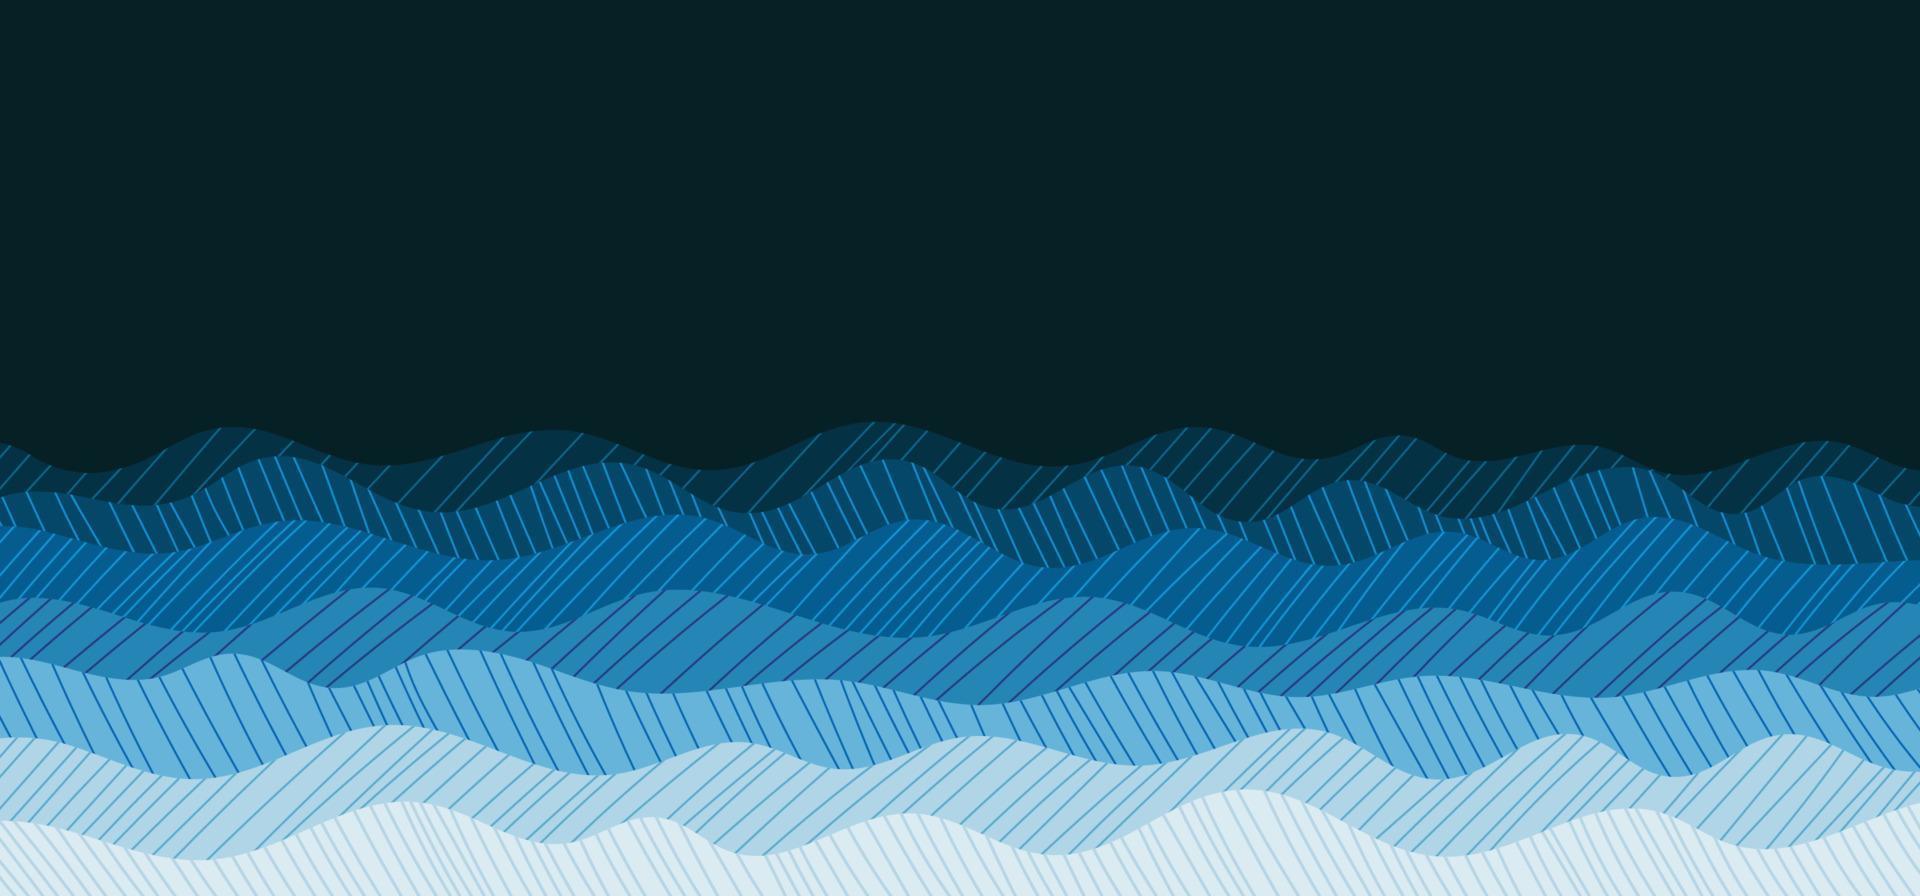 estilo ondulado azul océano abstracto de dibujo plantilla de arte de patrón de garabato. diseño superpuesto de fondo de estilo mínimo. ilustración vectorial vector